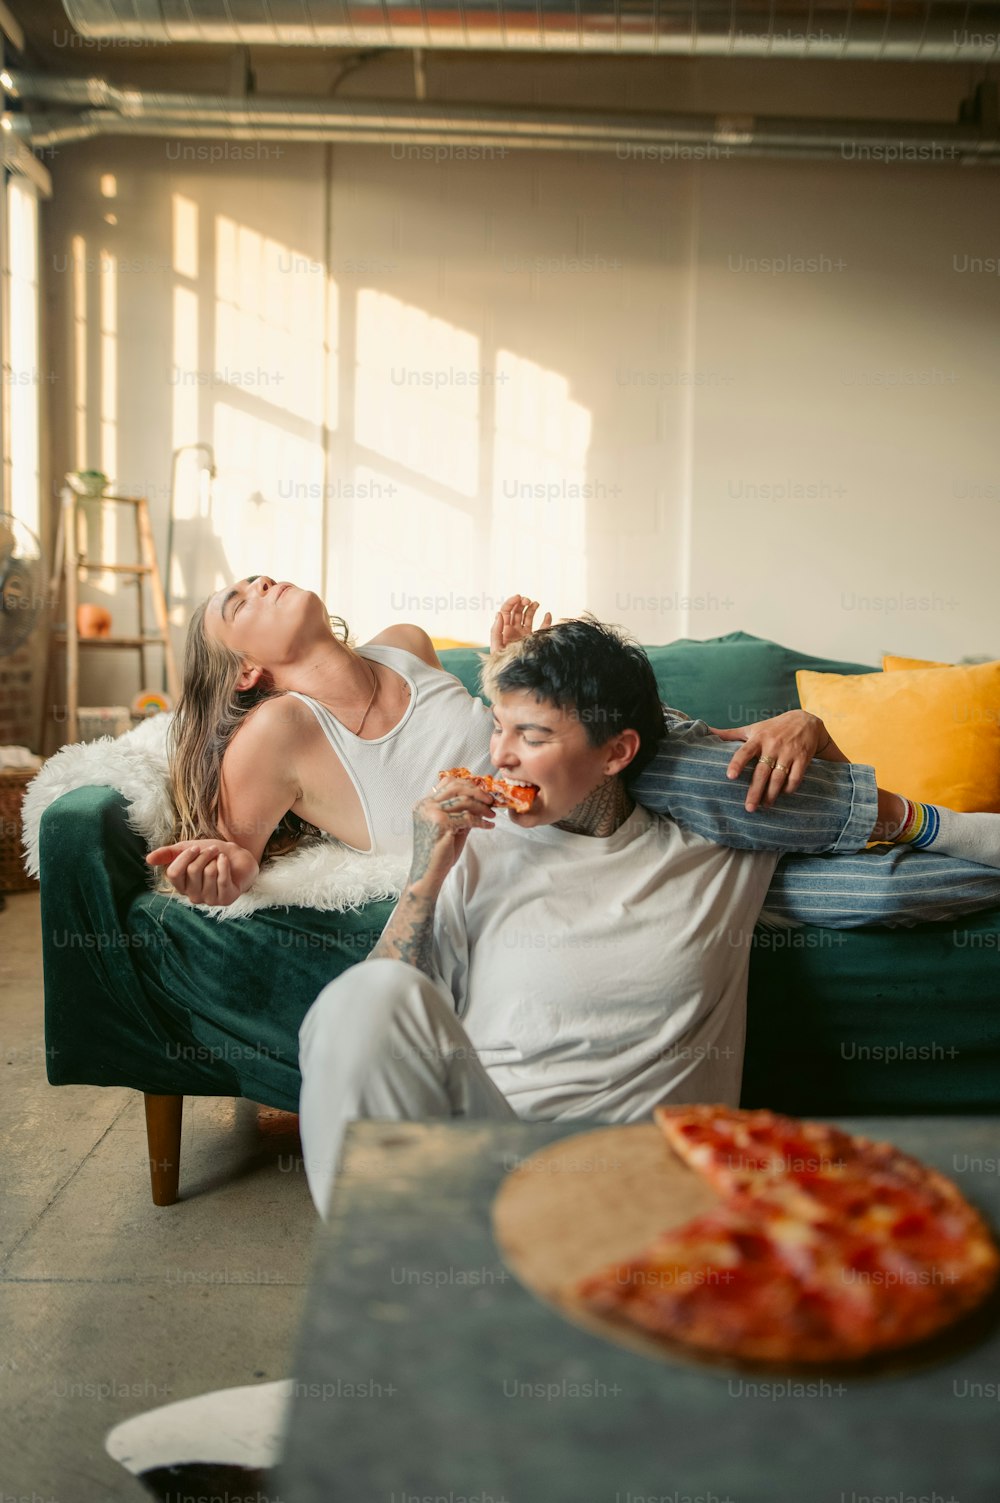 Ein Mann und eine Frau, die auf einer Couch liegen und Pizza essen